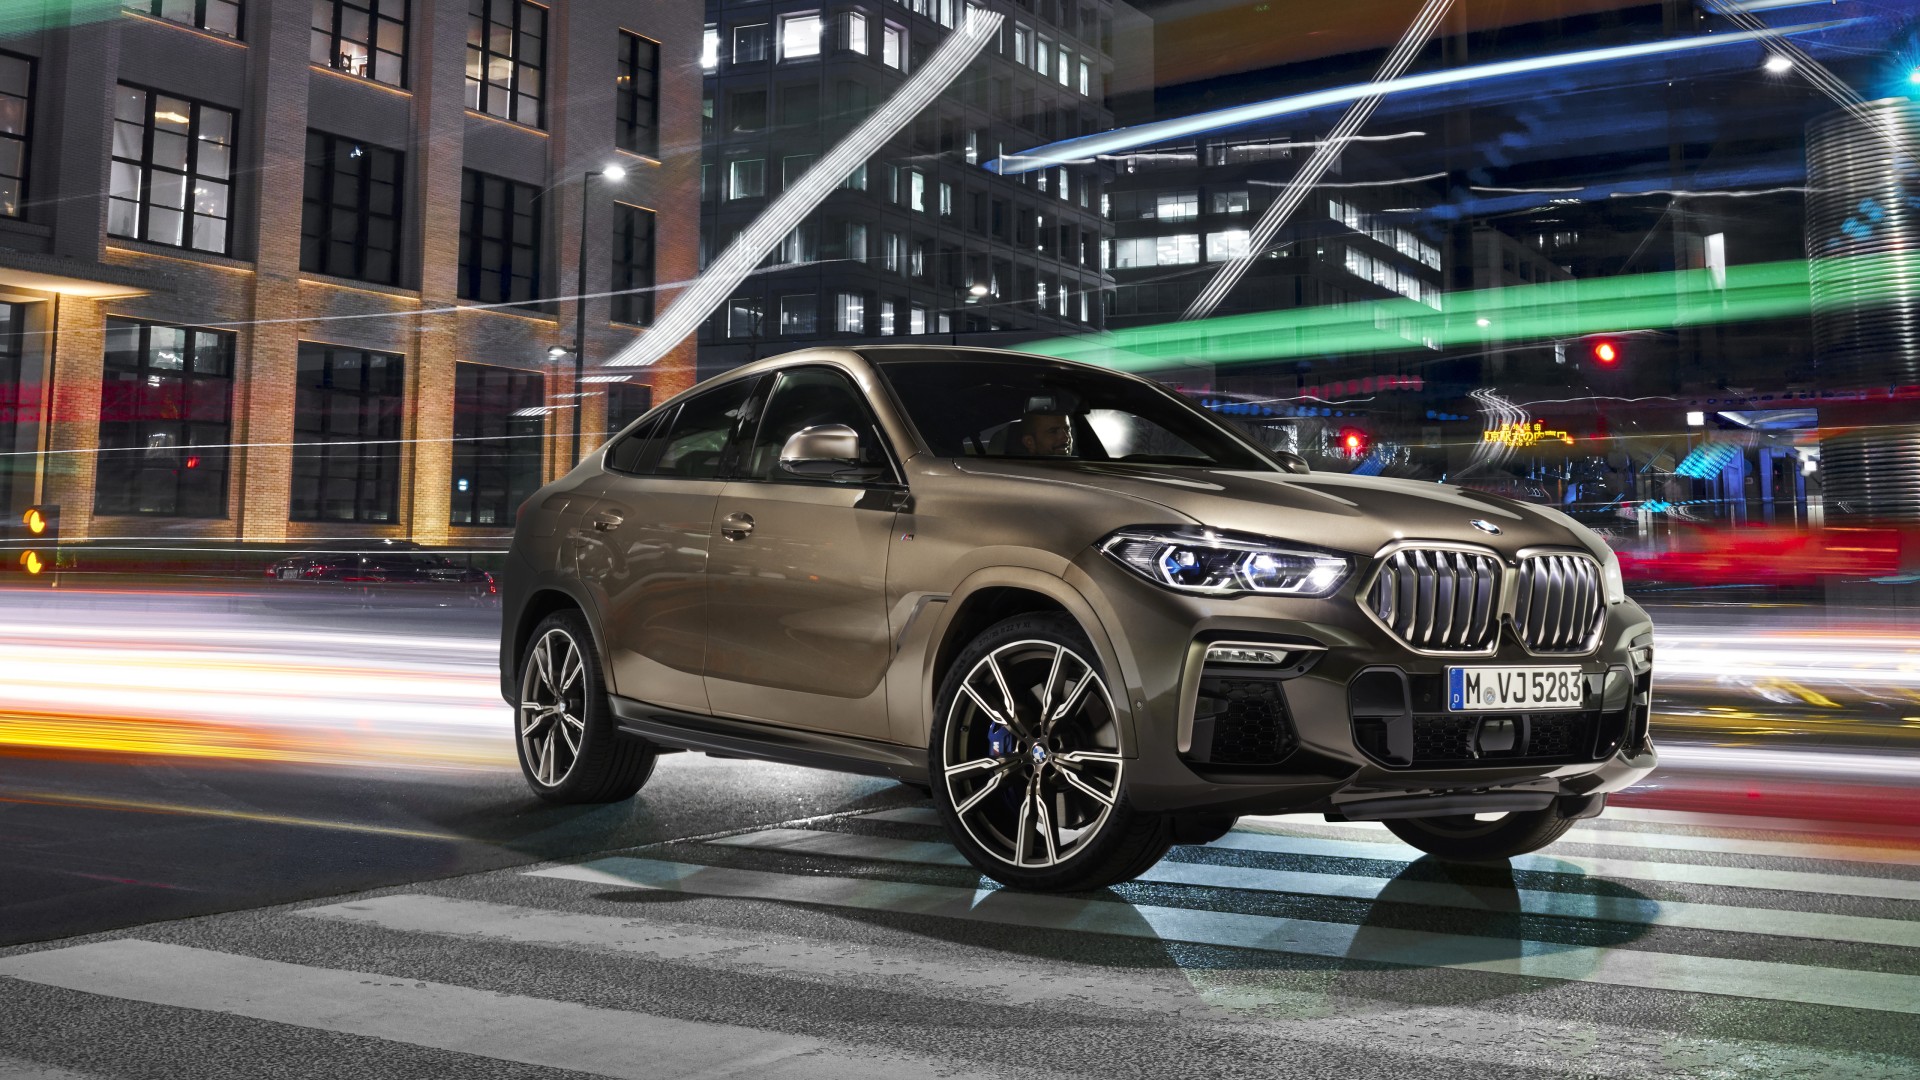 BMW X6 M50i 2019 5K Wallpaper | HD Car Wallpapers | ID #12851